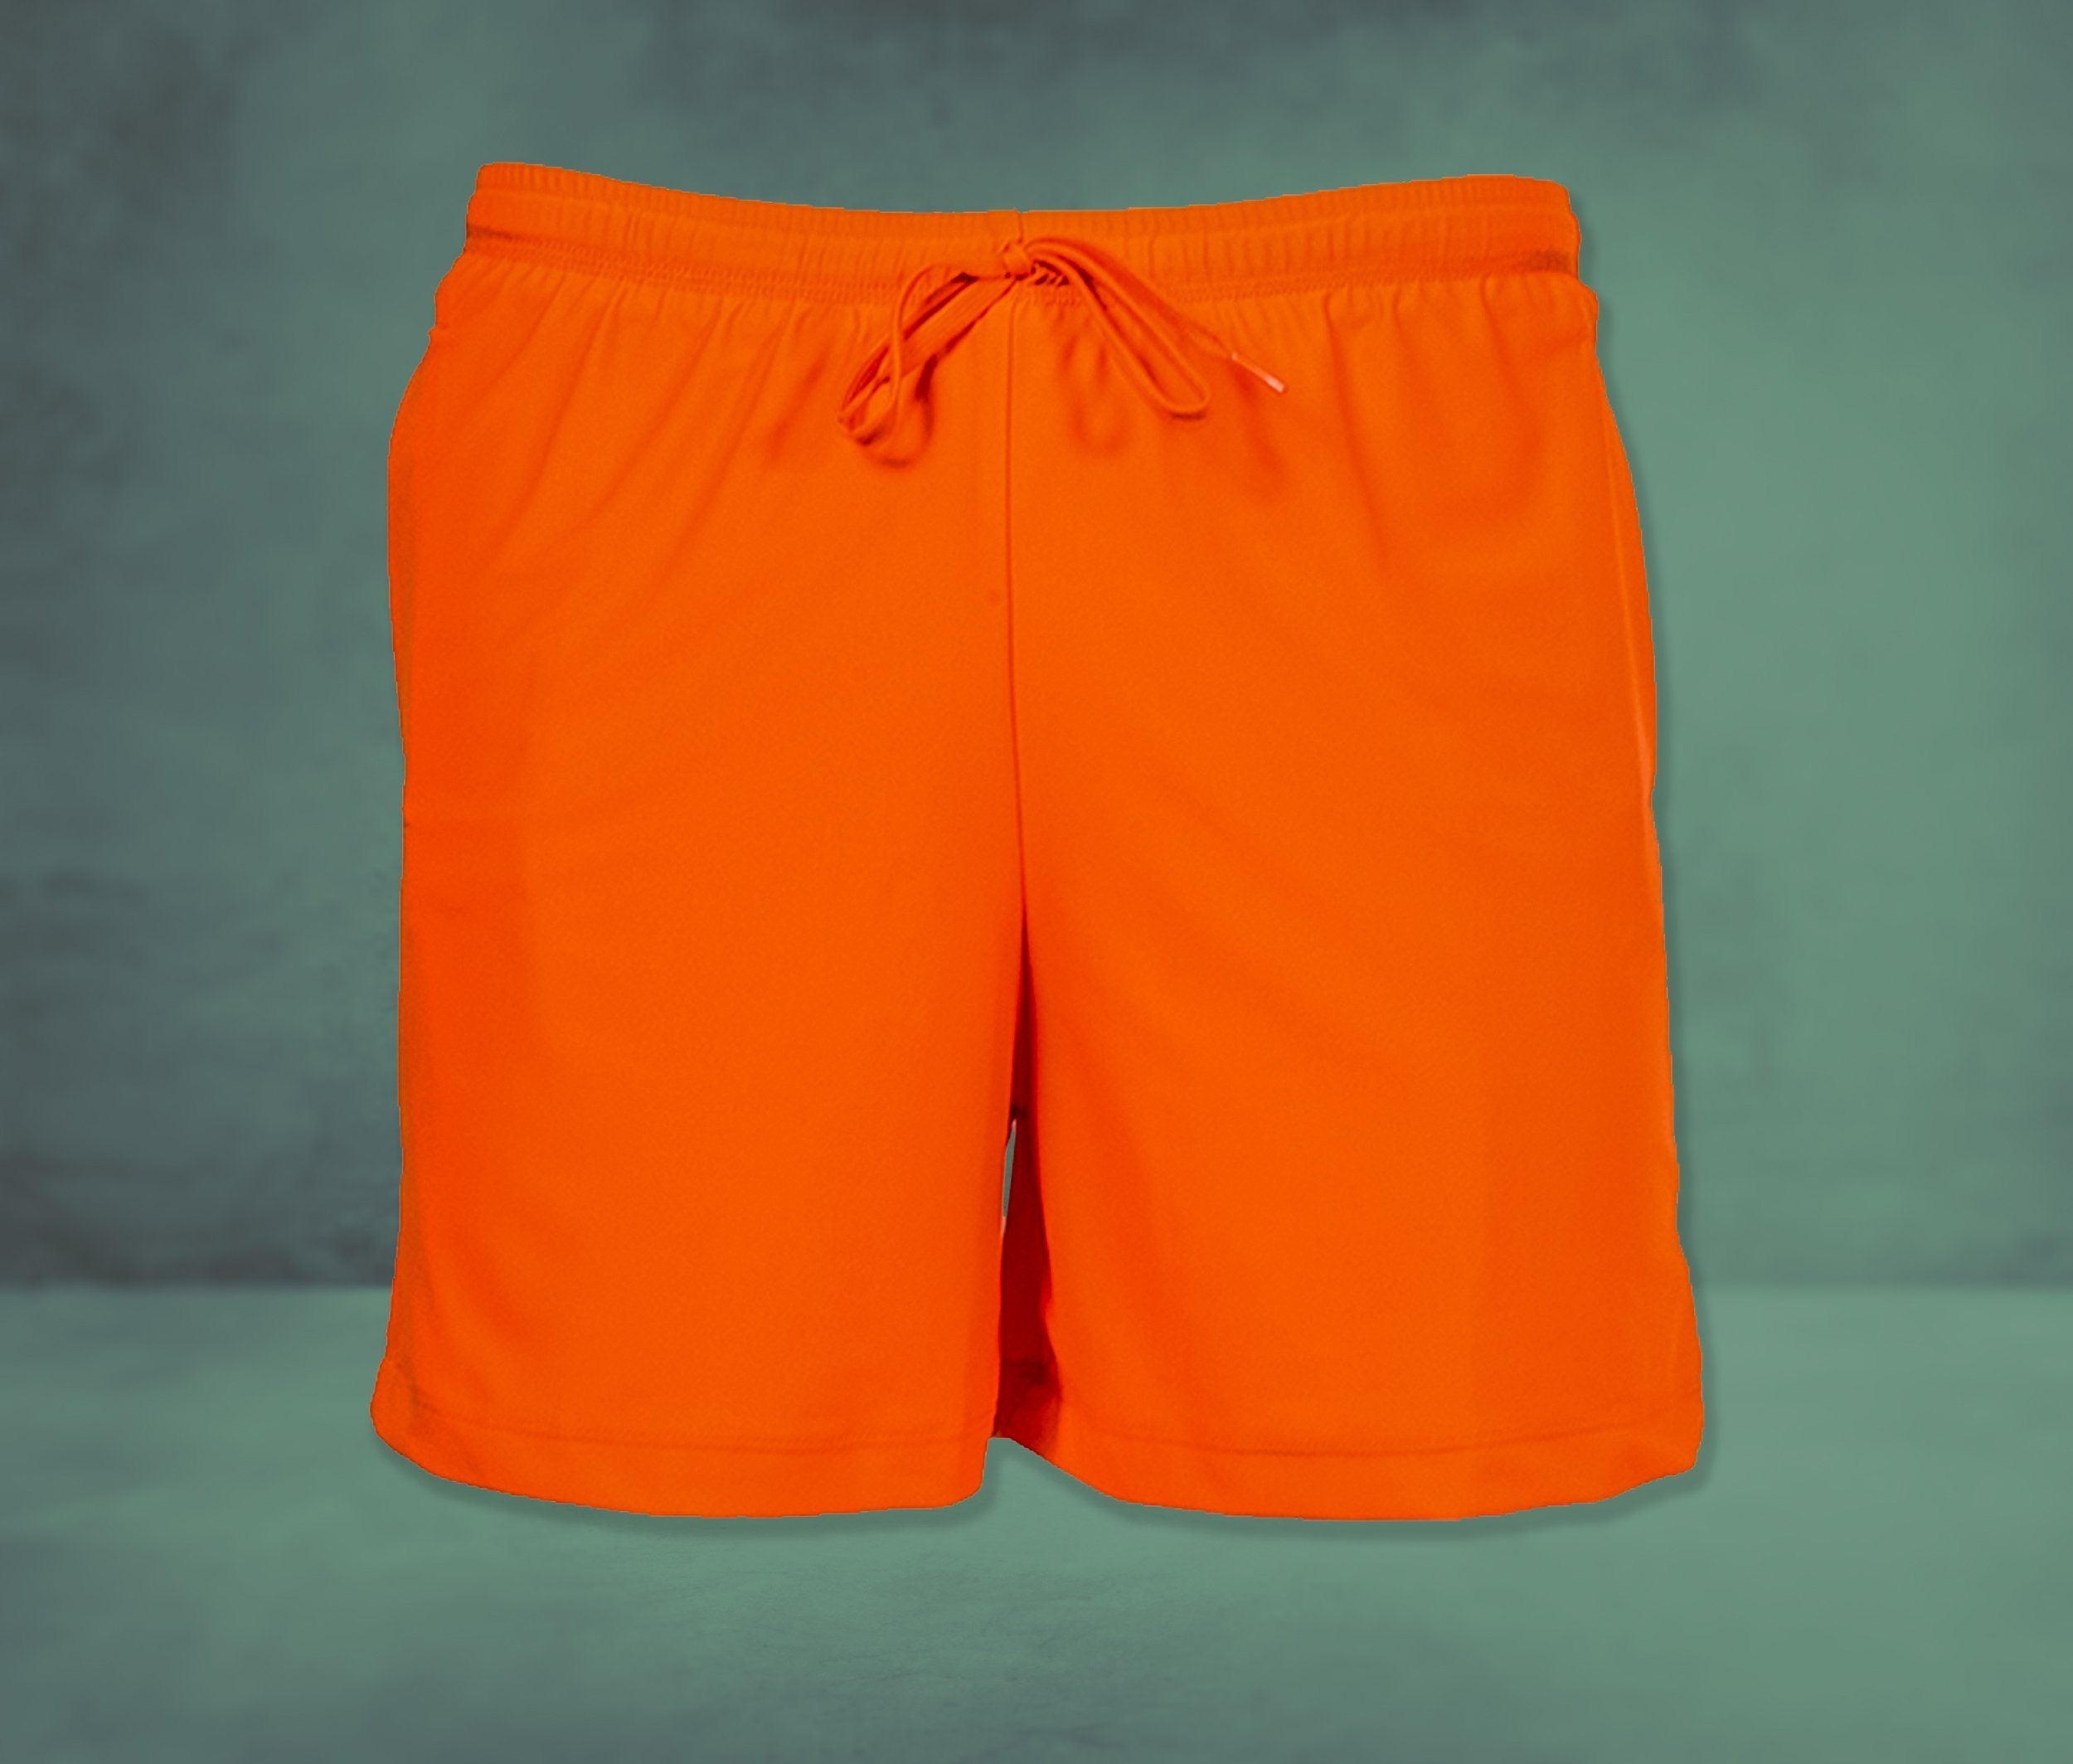 Blaze Orange Men's Shorts - XS